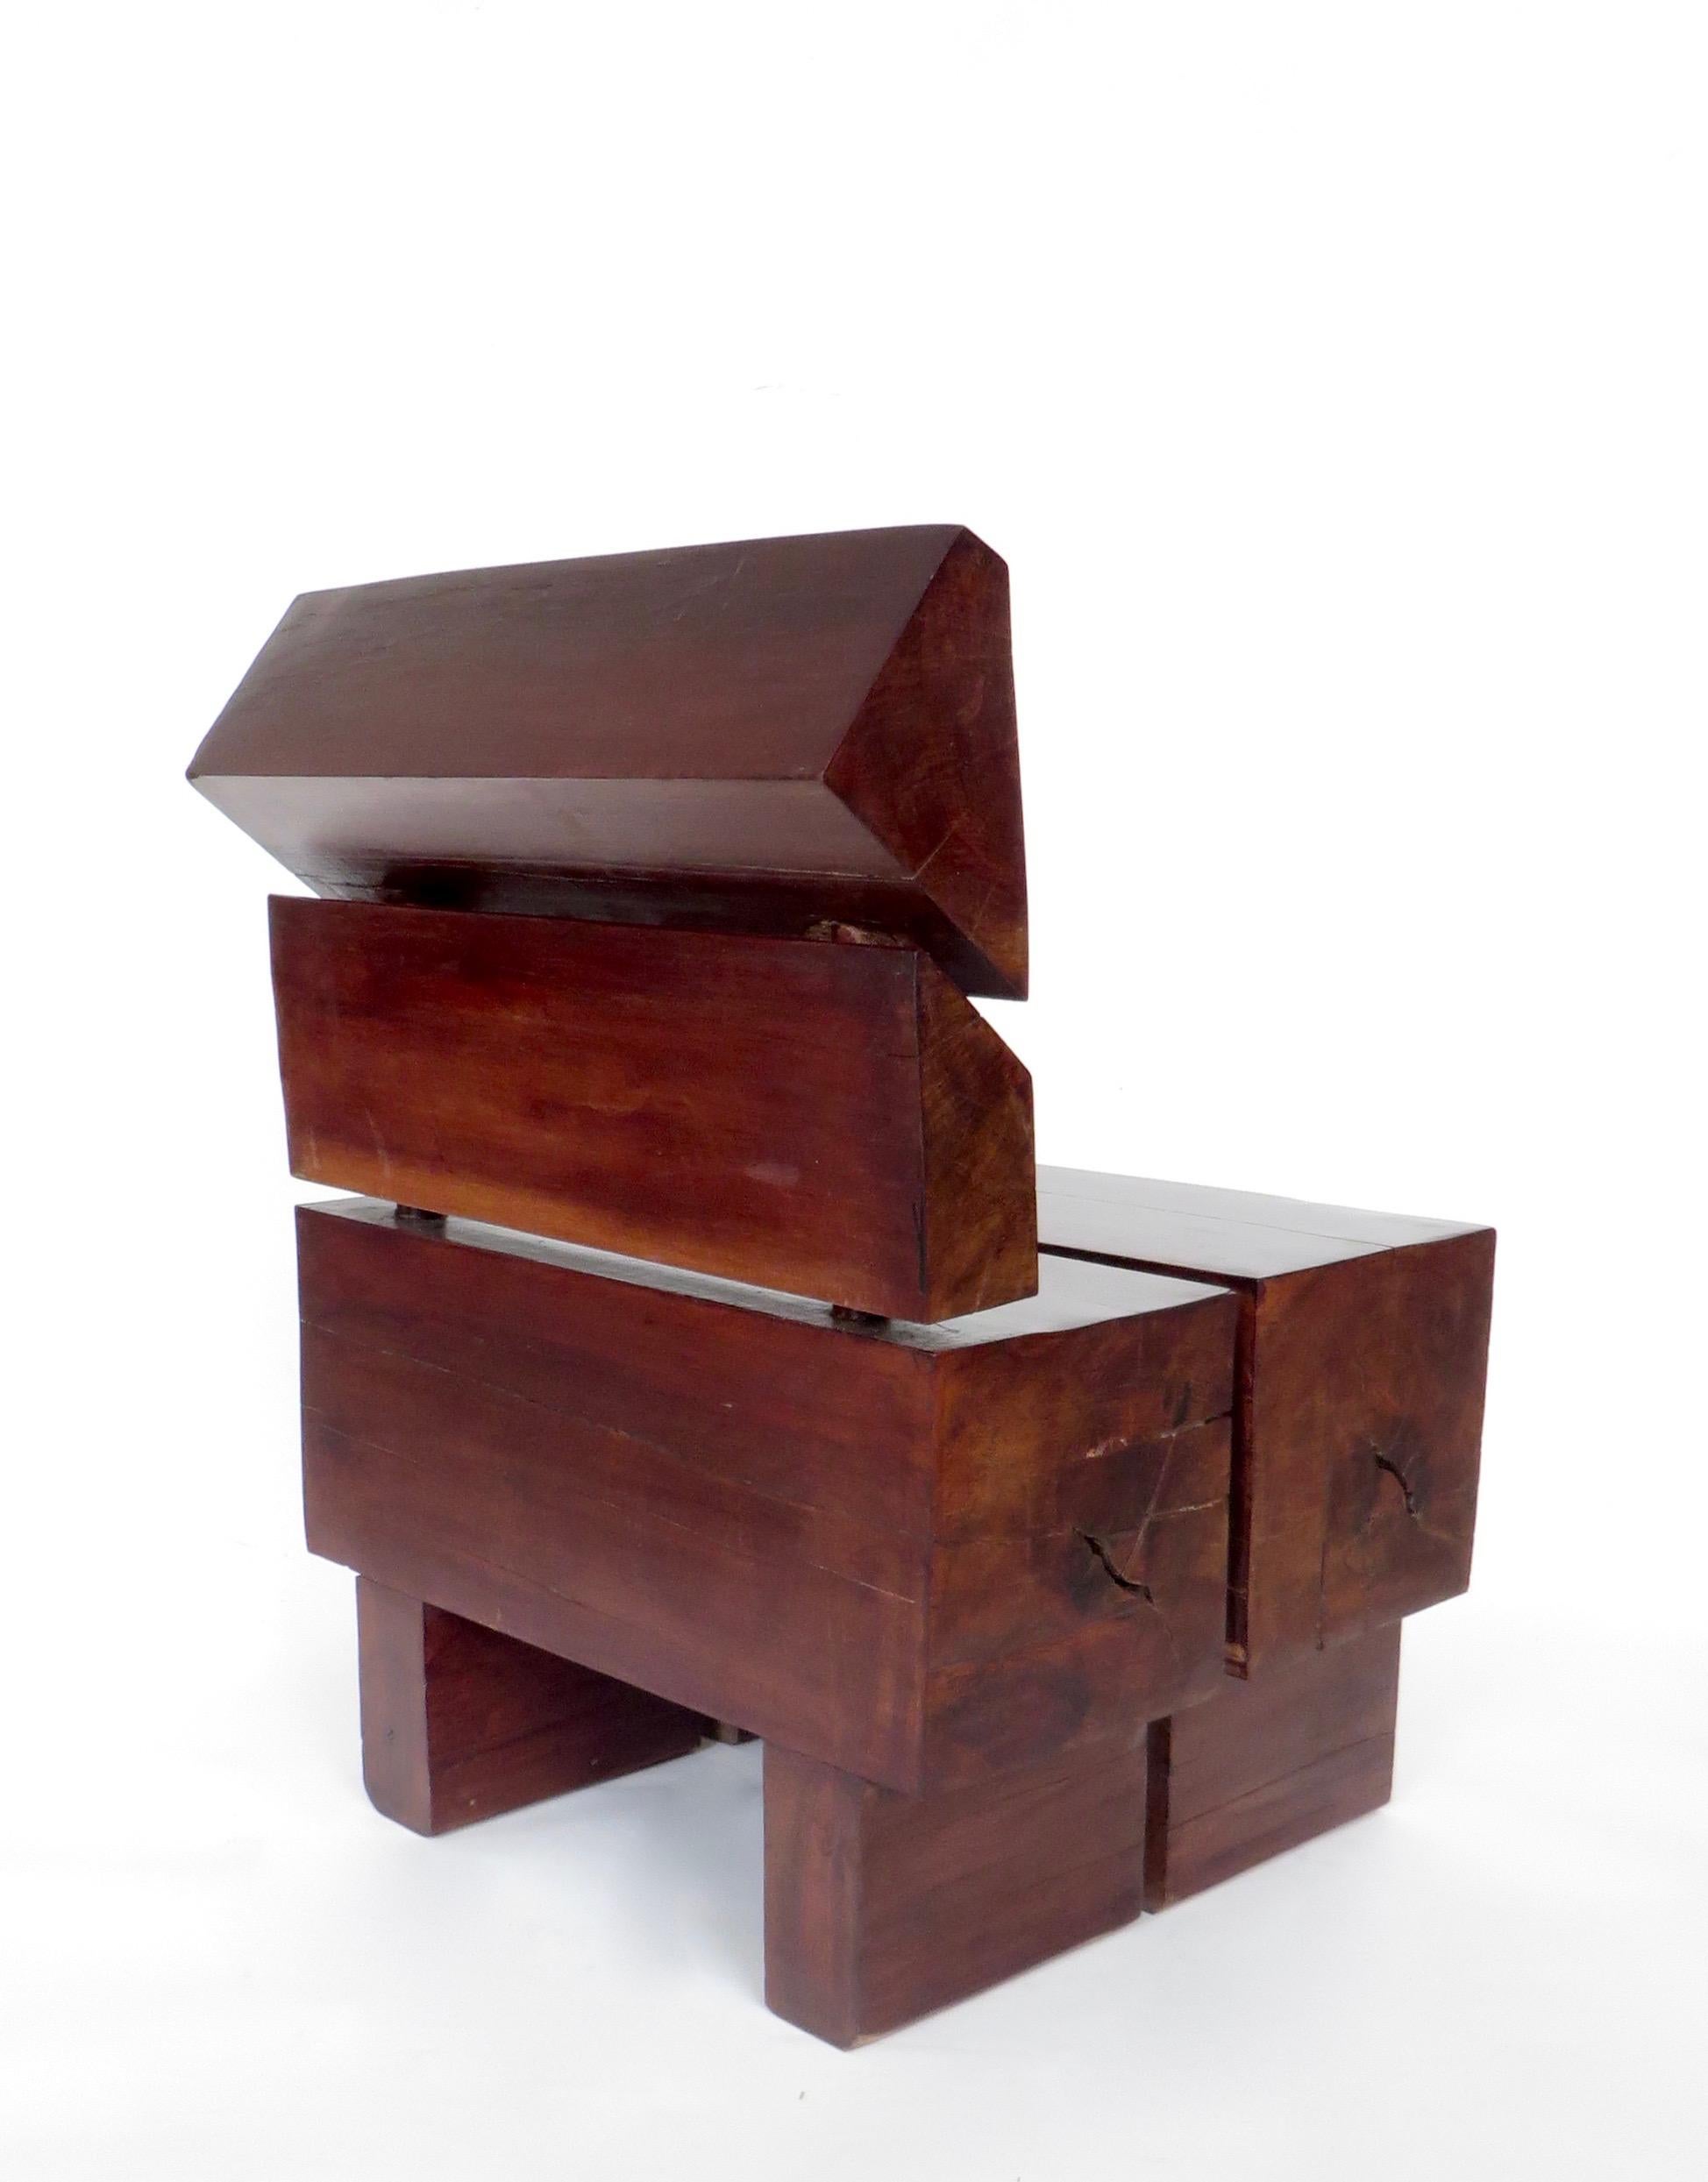 Brazilian Sculptural Low Organic Modernist Wood Chair 1